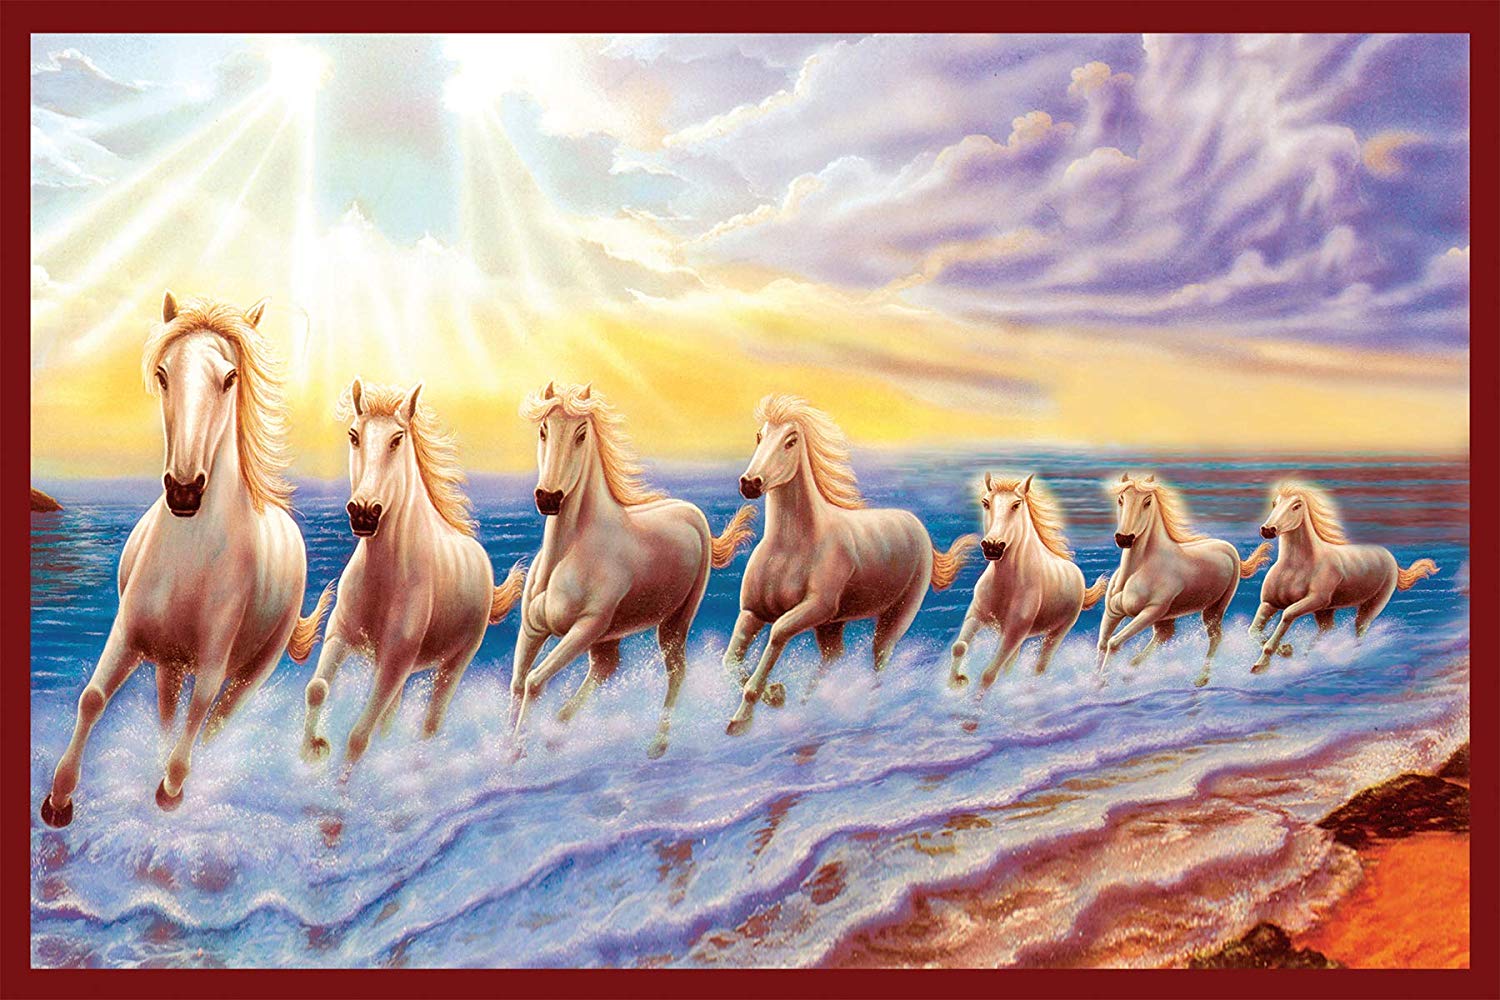 Sự mạnh mẽ và sức sống của 7 con ngựa được tái hiện tuyệt đẹp trên hình nền máy tính. Hãy đón xem và cảm nhận một thiên đường rộng lớn của các loài động vật hoang dã mở ra ngay trên màn hình của bạn.